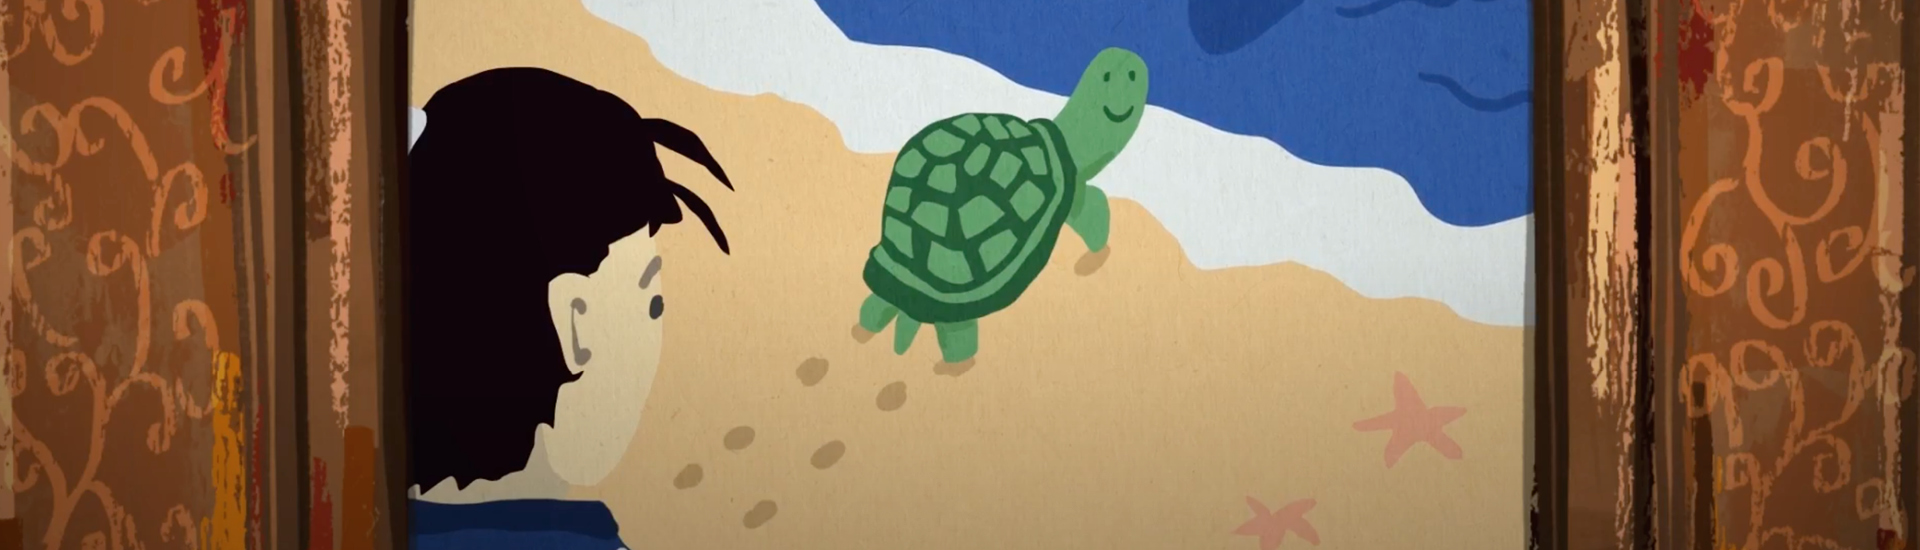 Kamishibai com ilustração do conto Urashima Taro. Um menino de perfil avista uma tartarura verde caminhando em direção ao mar.